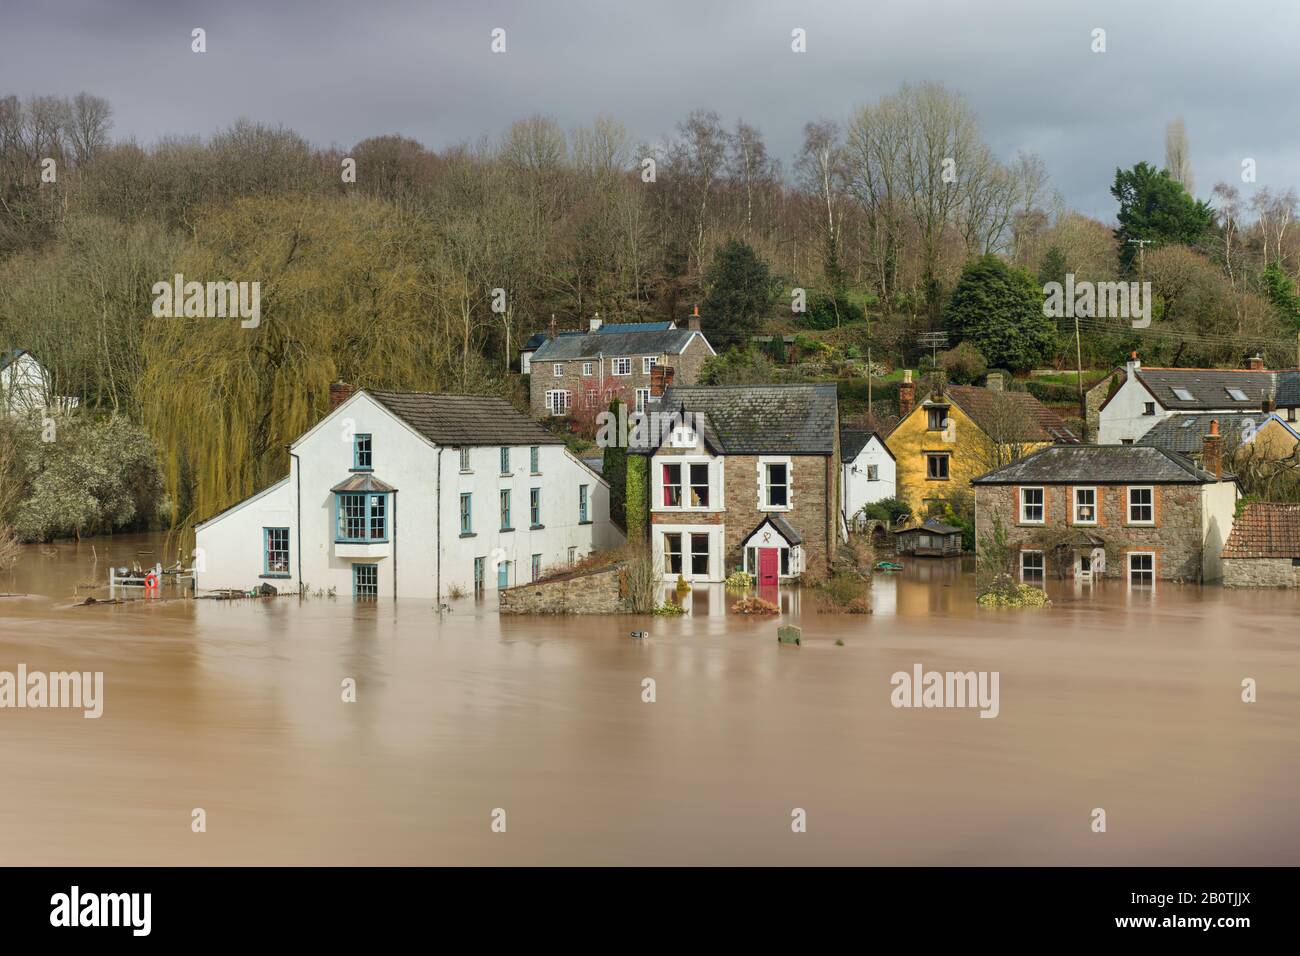 Les maisons en bord de rivière sont inondées alors que la rivière Wye continue de monter à la suite de fortes pluies. Février 2020. Banque D'Images